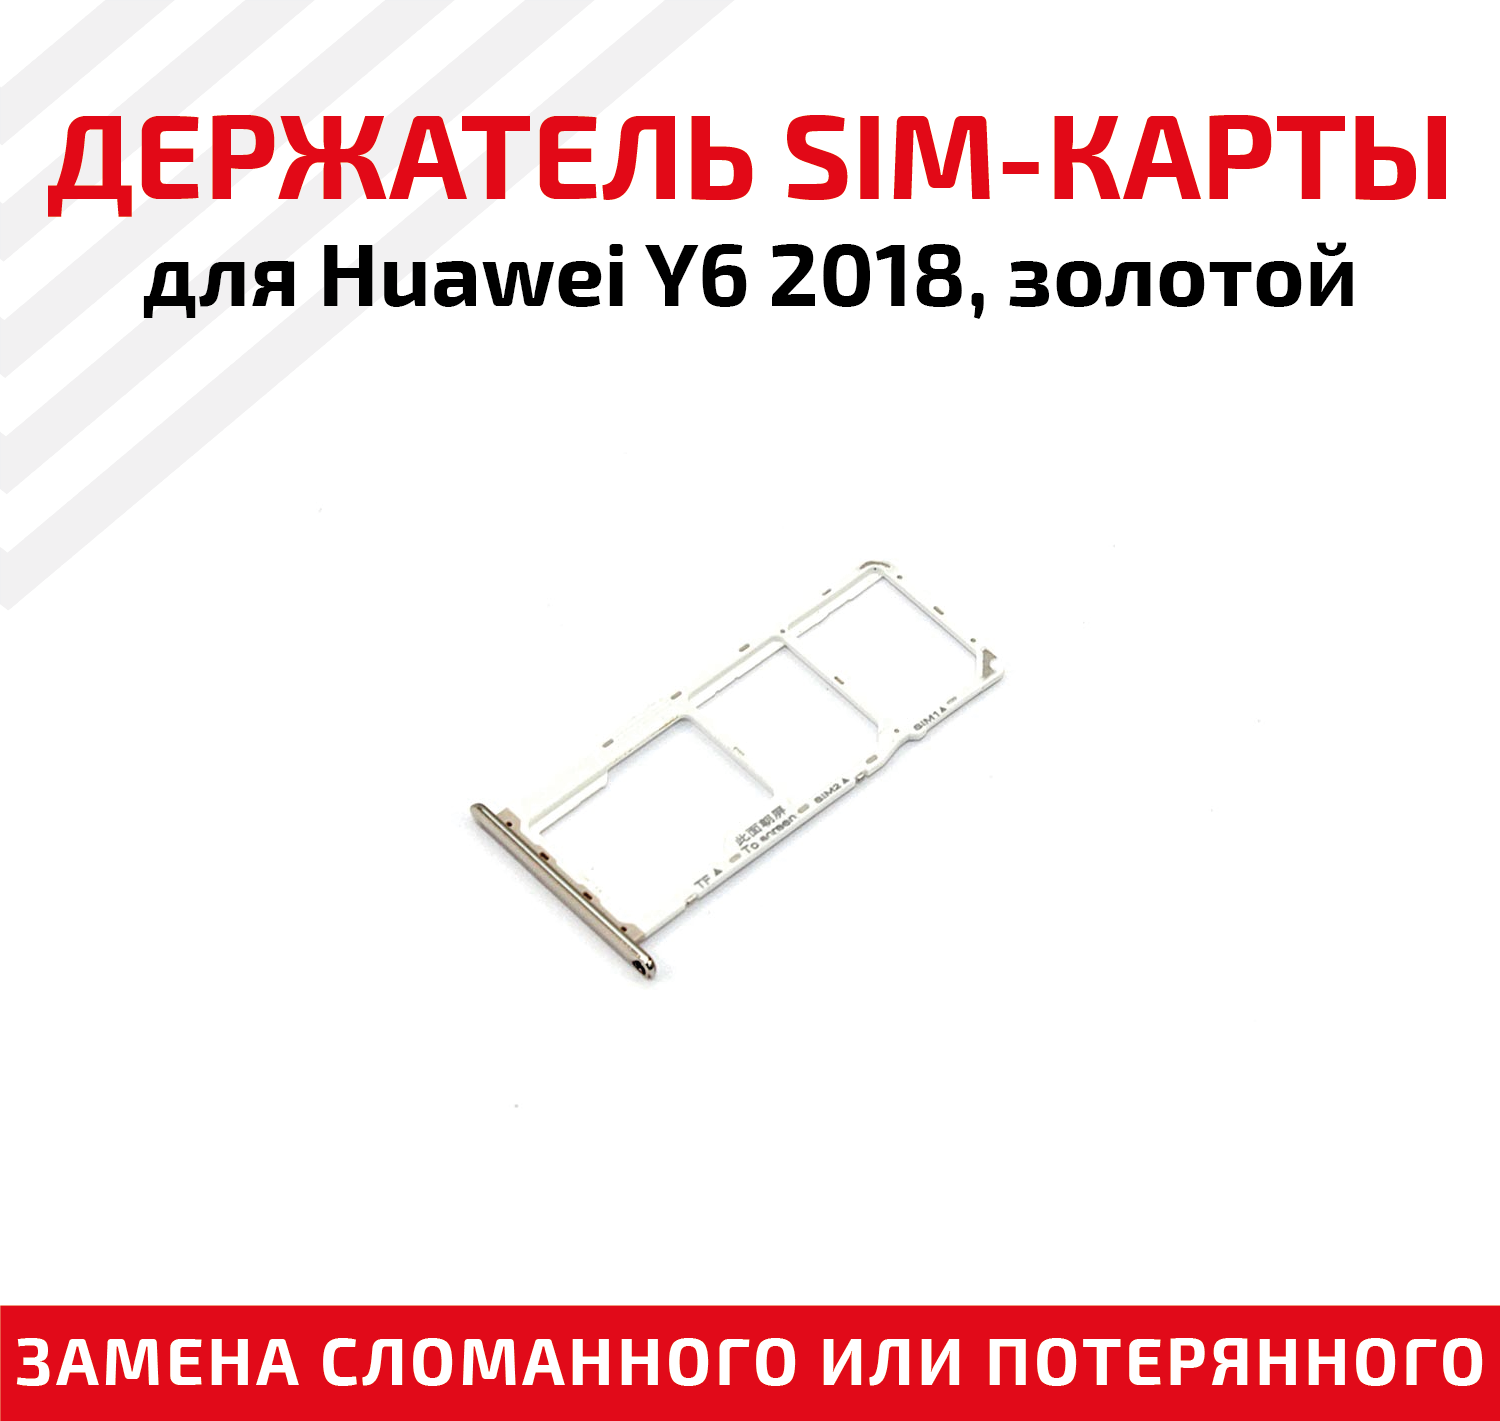 Лоток (держатель, контейнер, слот) SIM-карты для мобильного телефона (смартфона) Huawei Y6 2018, золотой